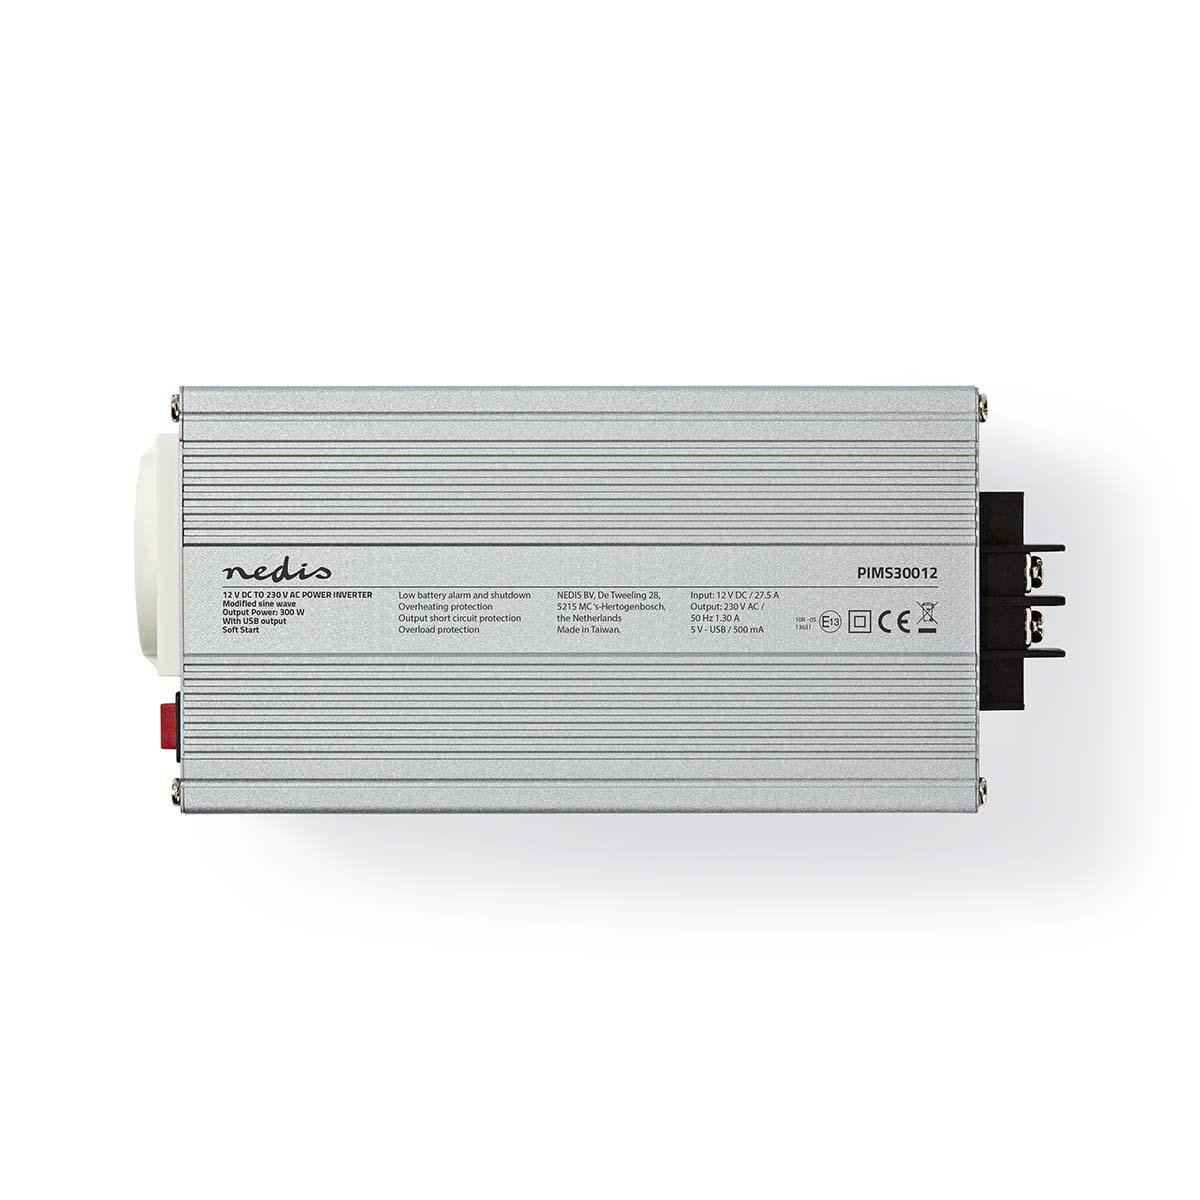 Power PIMS30012 NEDIS Inverter